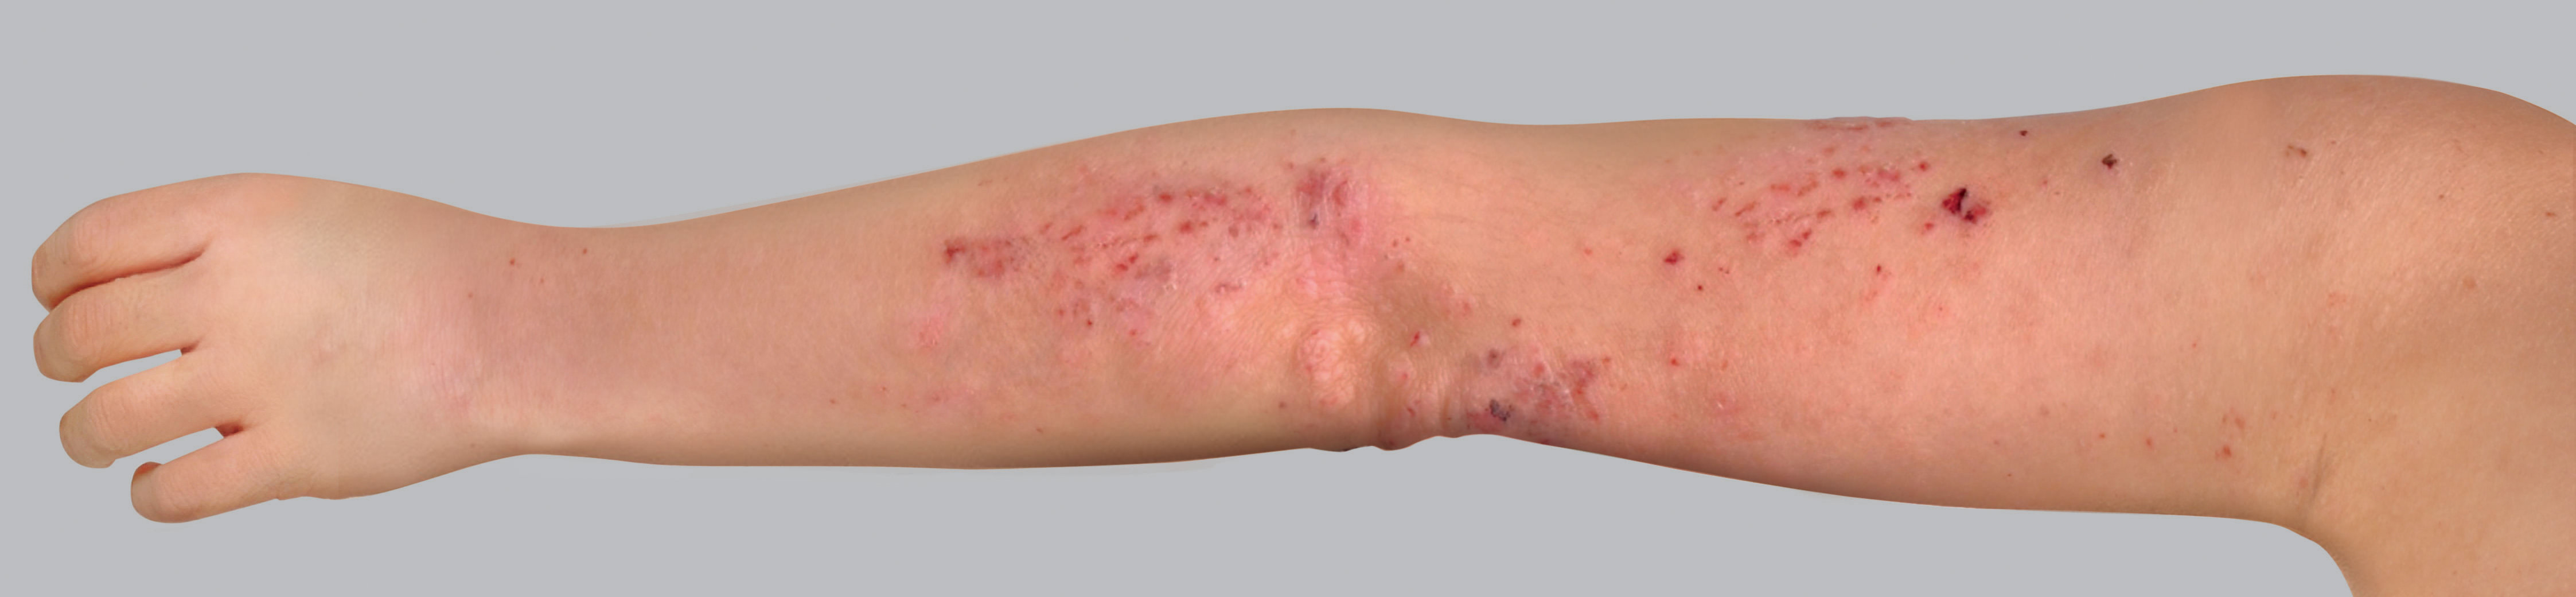 Sintomas do eczema atópico: lesões de coceira ou escoriação